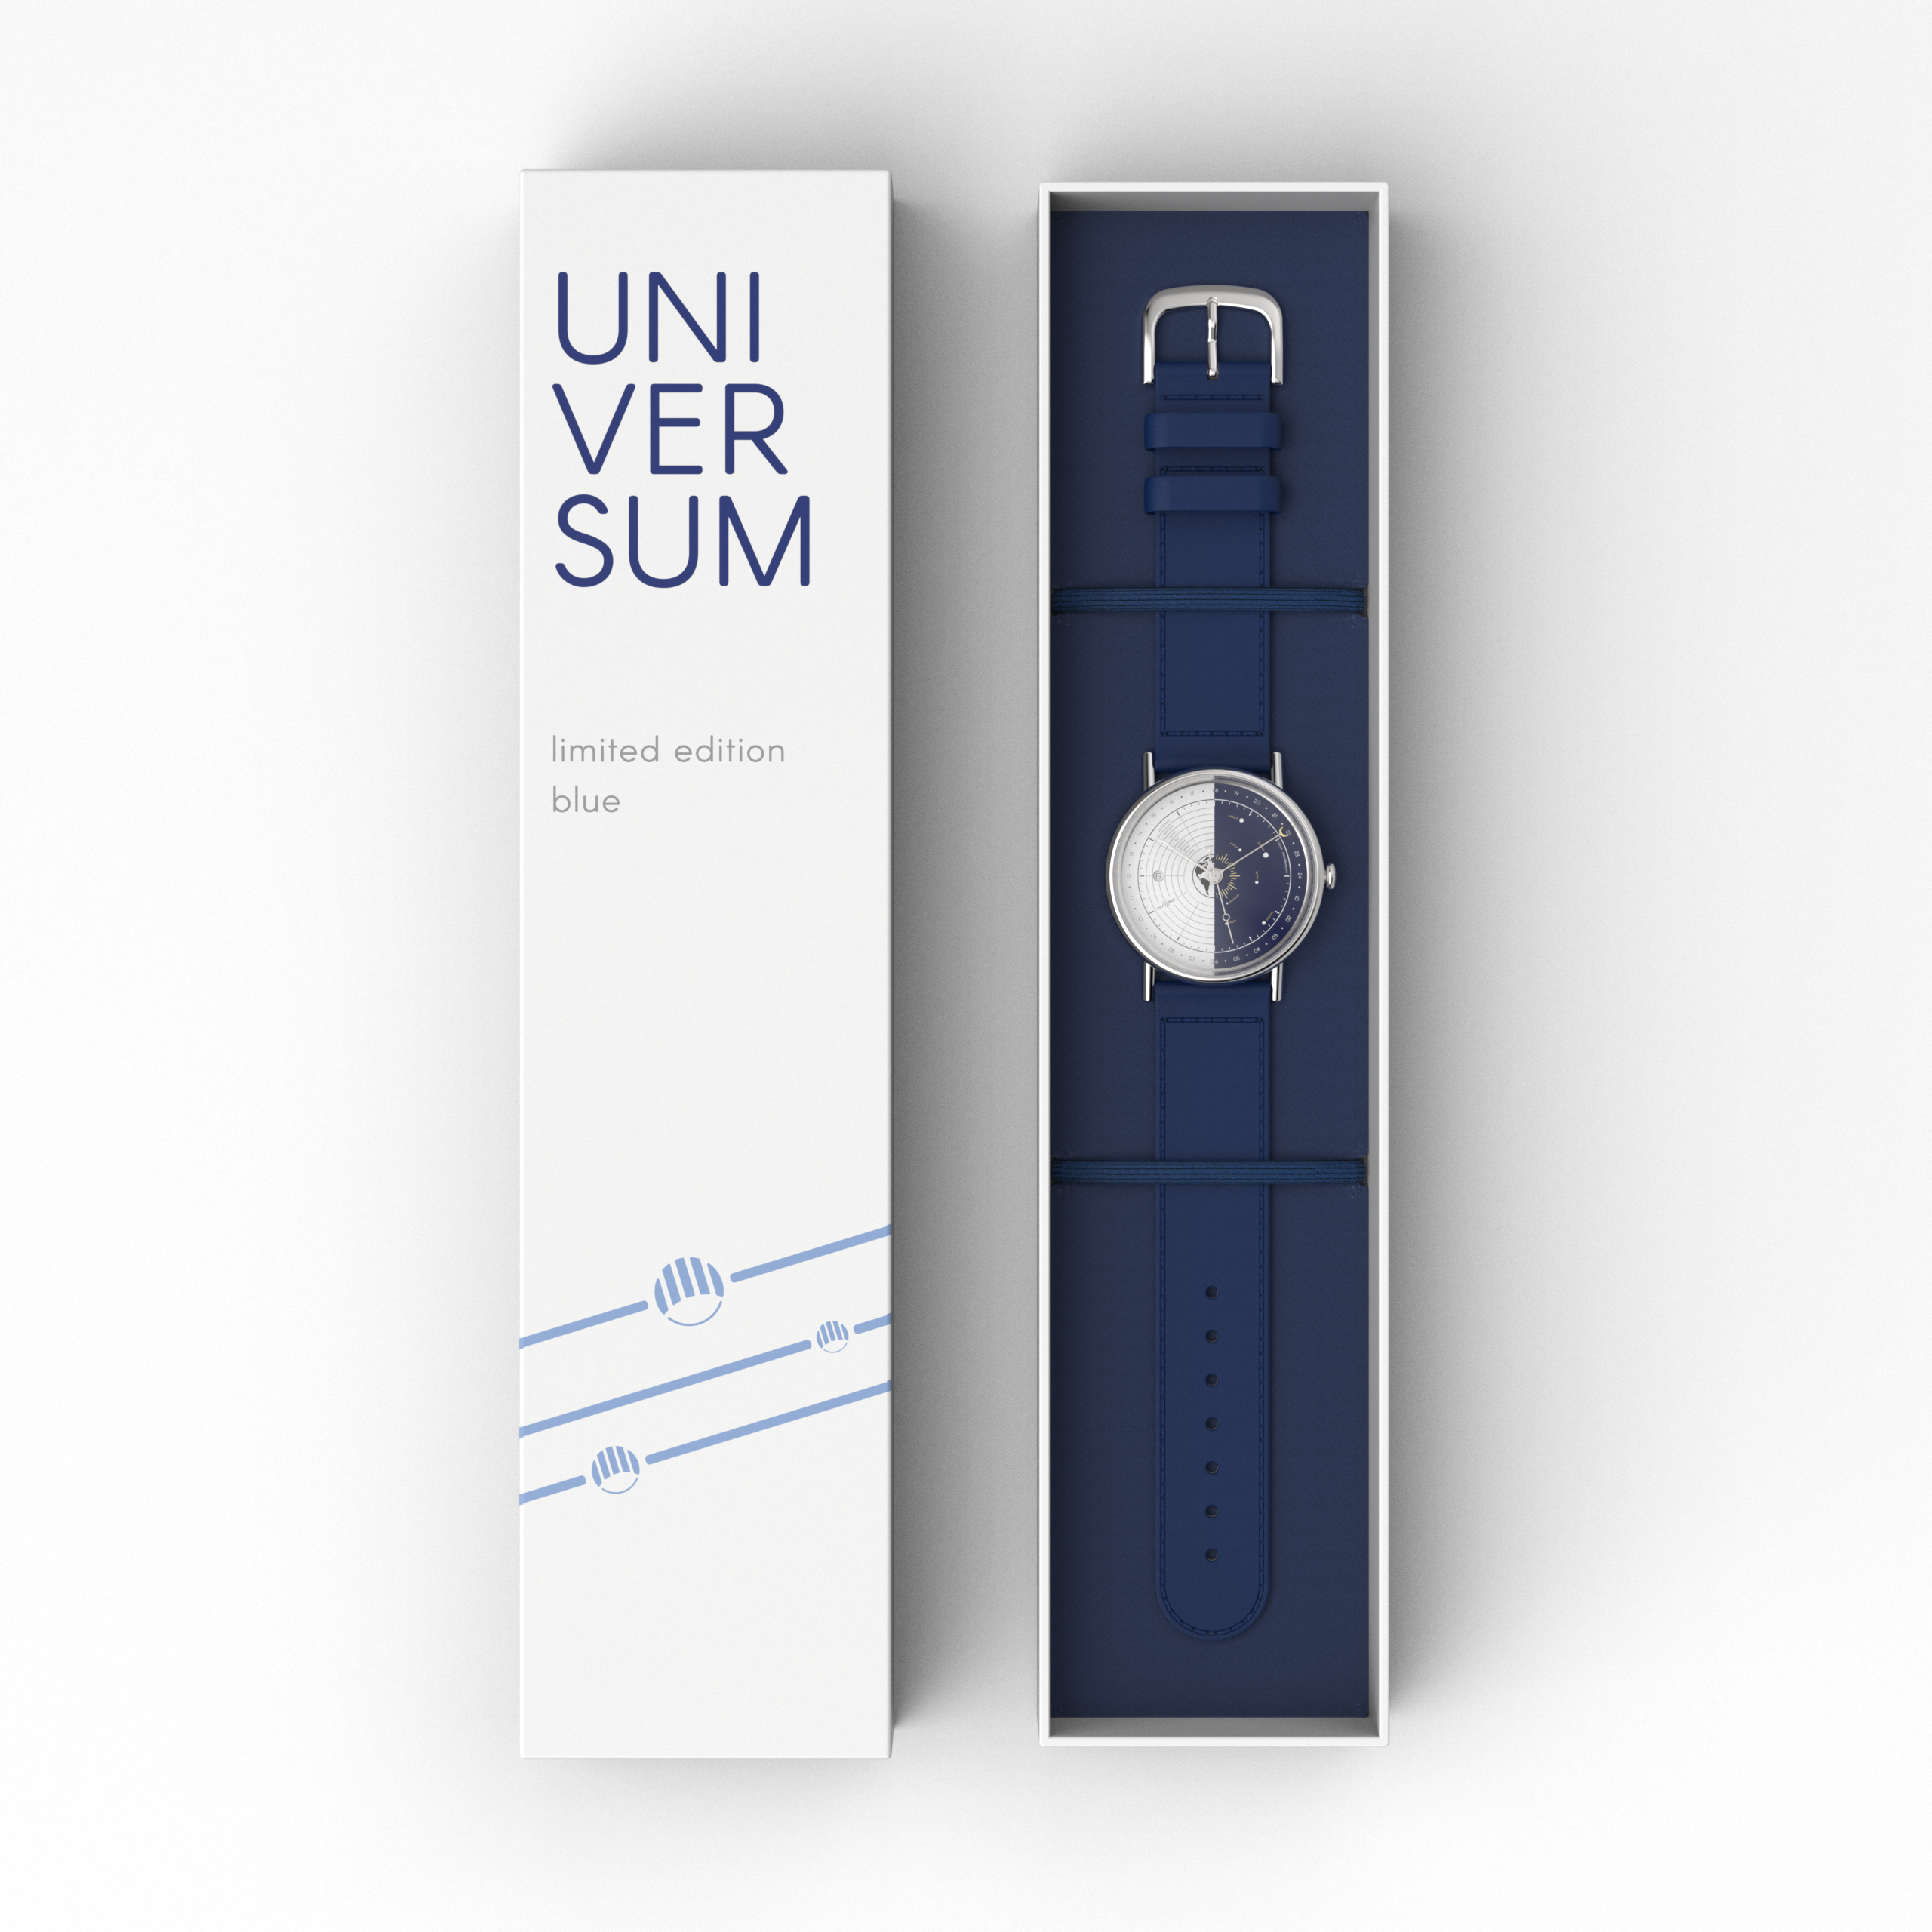 Universum Mechanical Watch